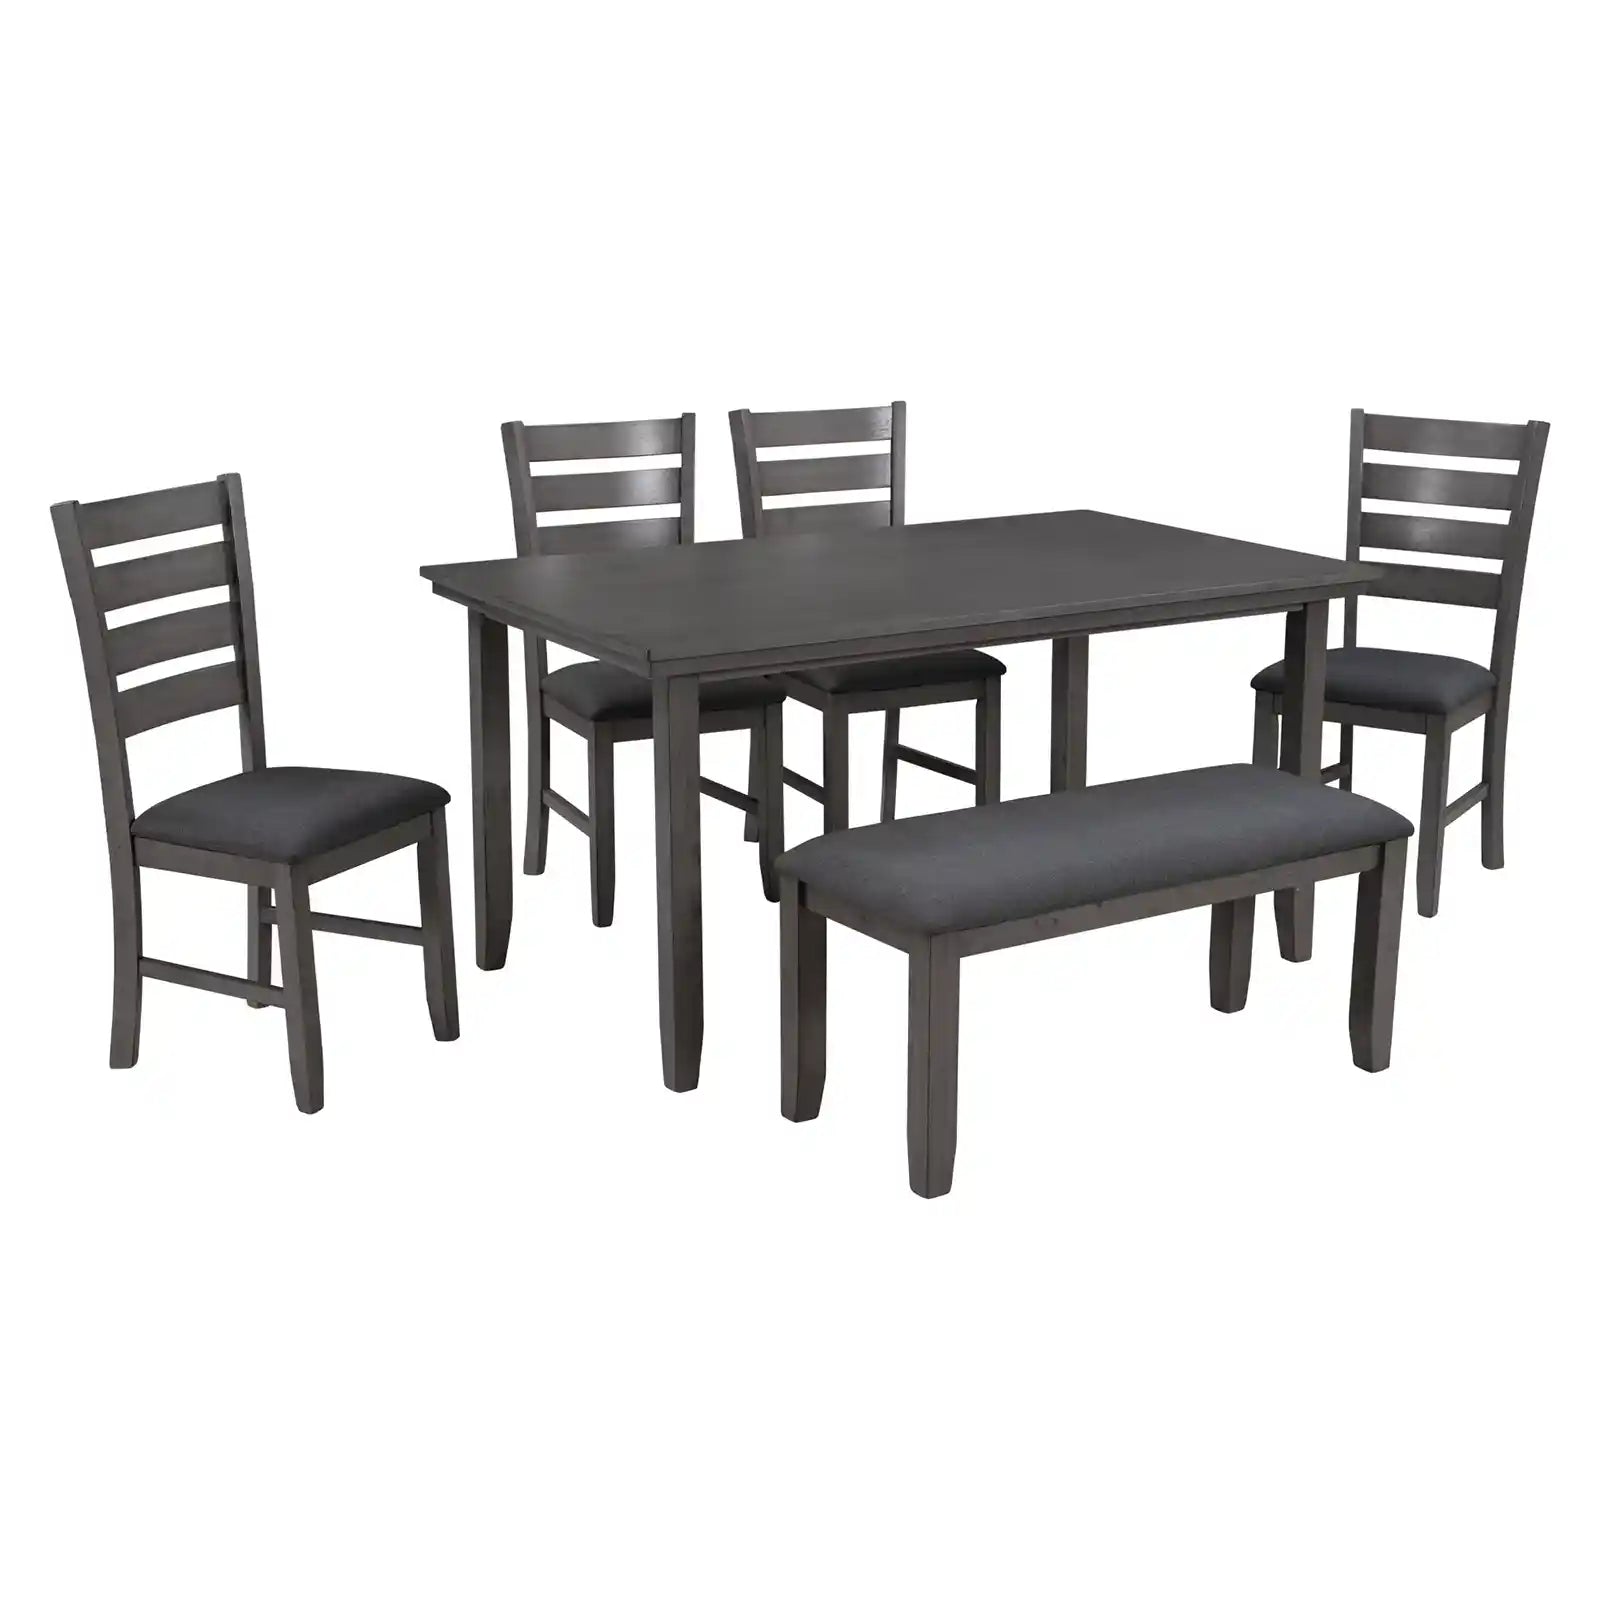 Juego de mesa de comedor para 6 personas, juego de mesa rústica de acacia con 4 sillas y banco